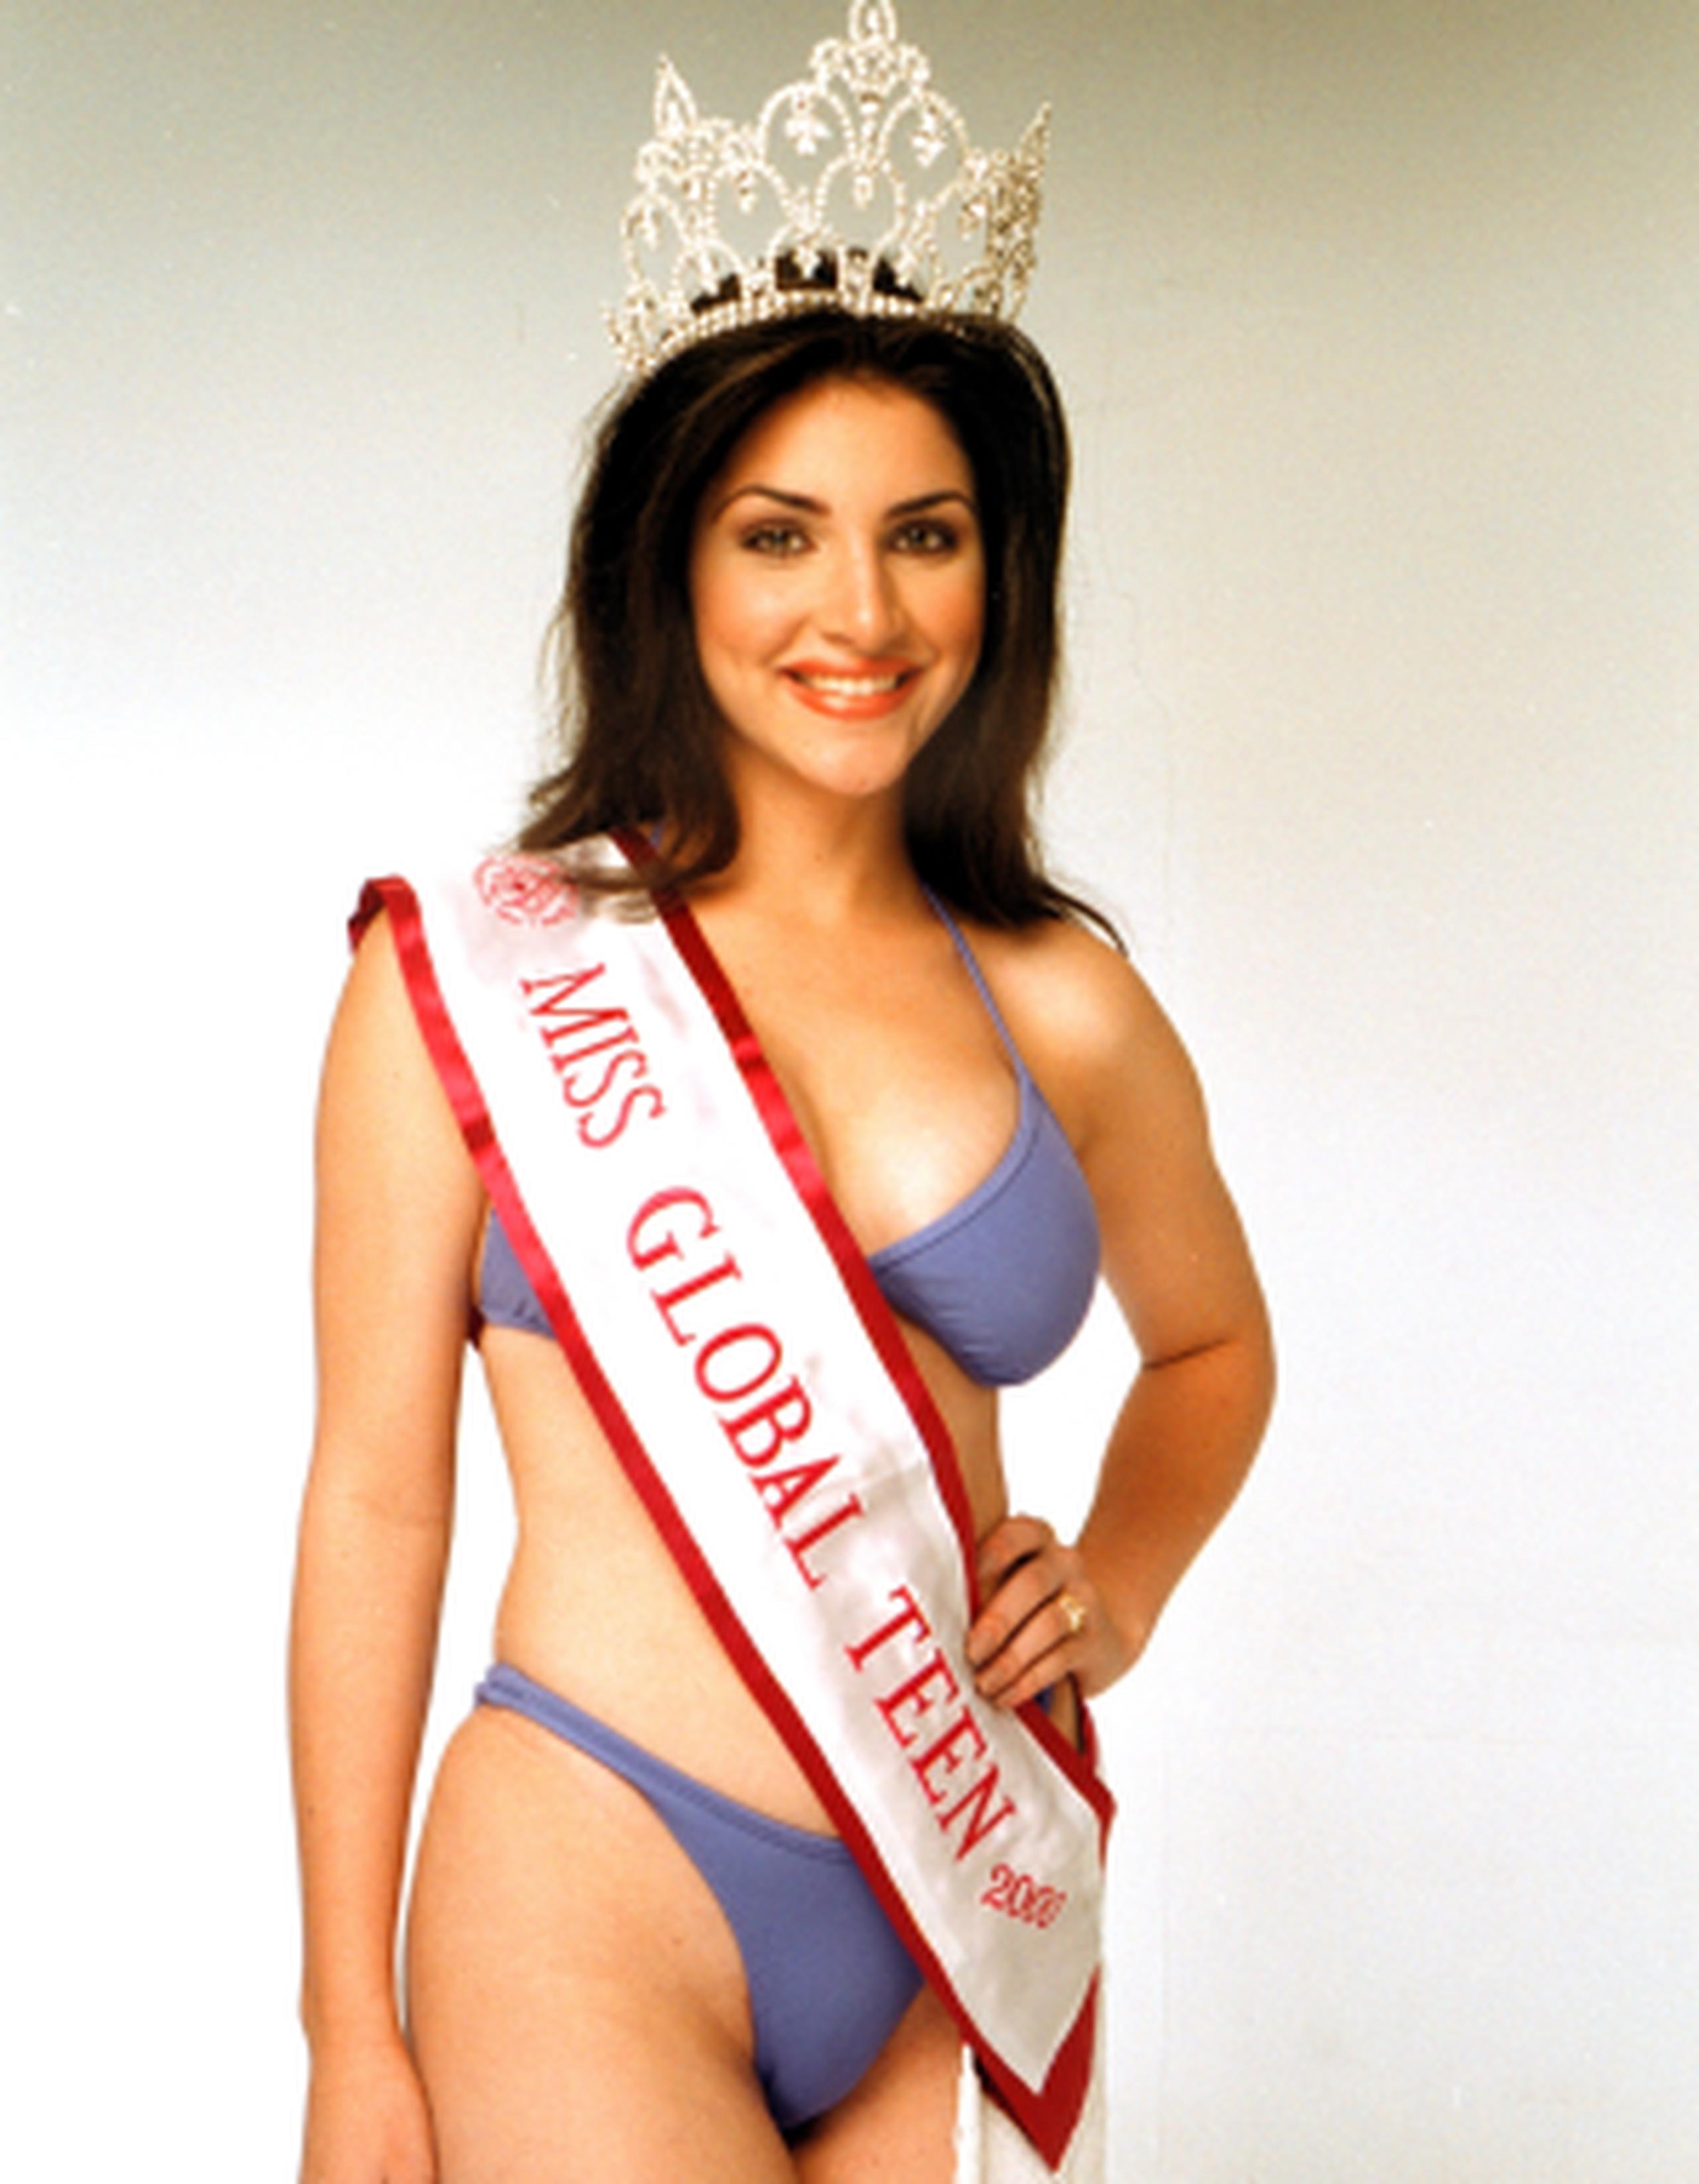 Katiria Soto ganó el certamen de belleza a los 17 años. (Archivo)